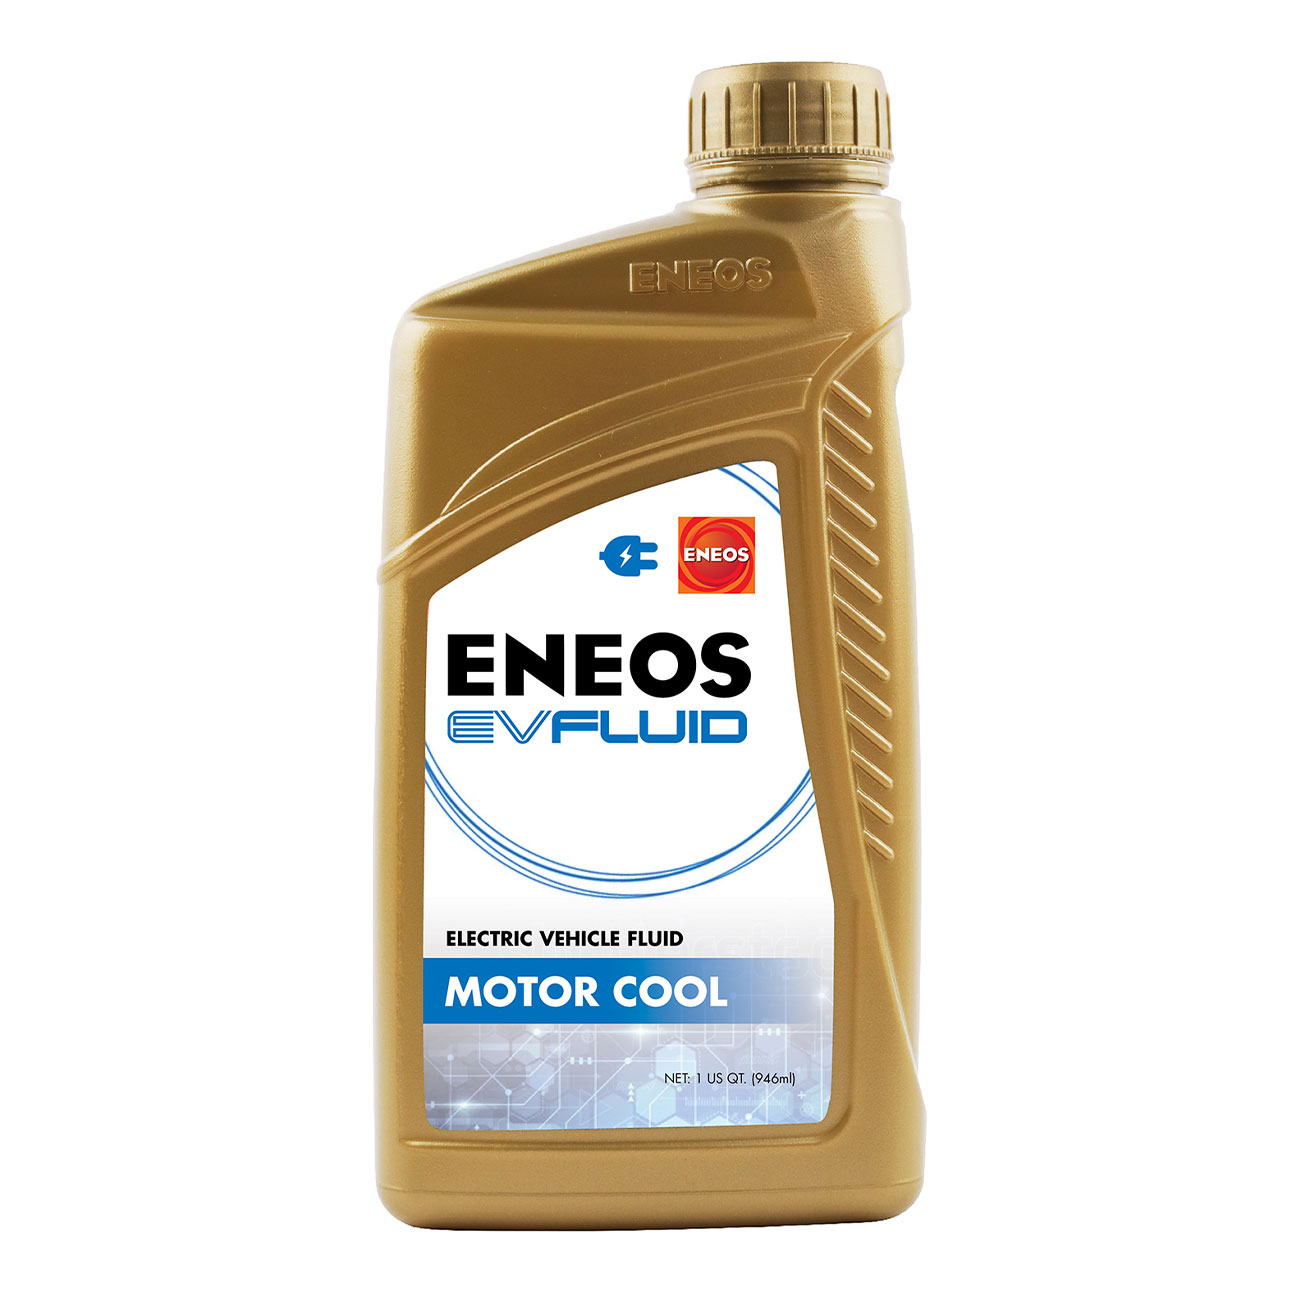 ENEOS EV Fluid Motor Cool